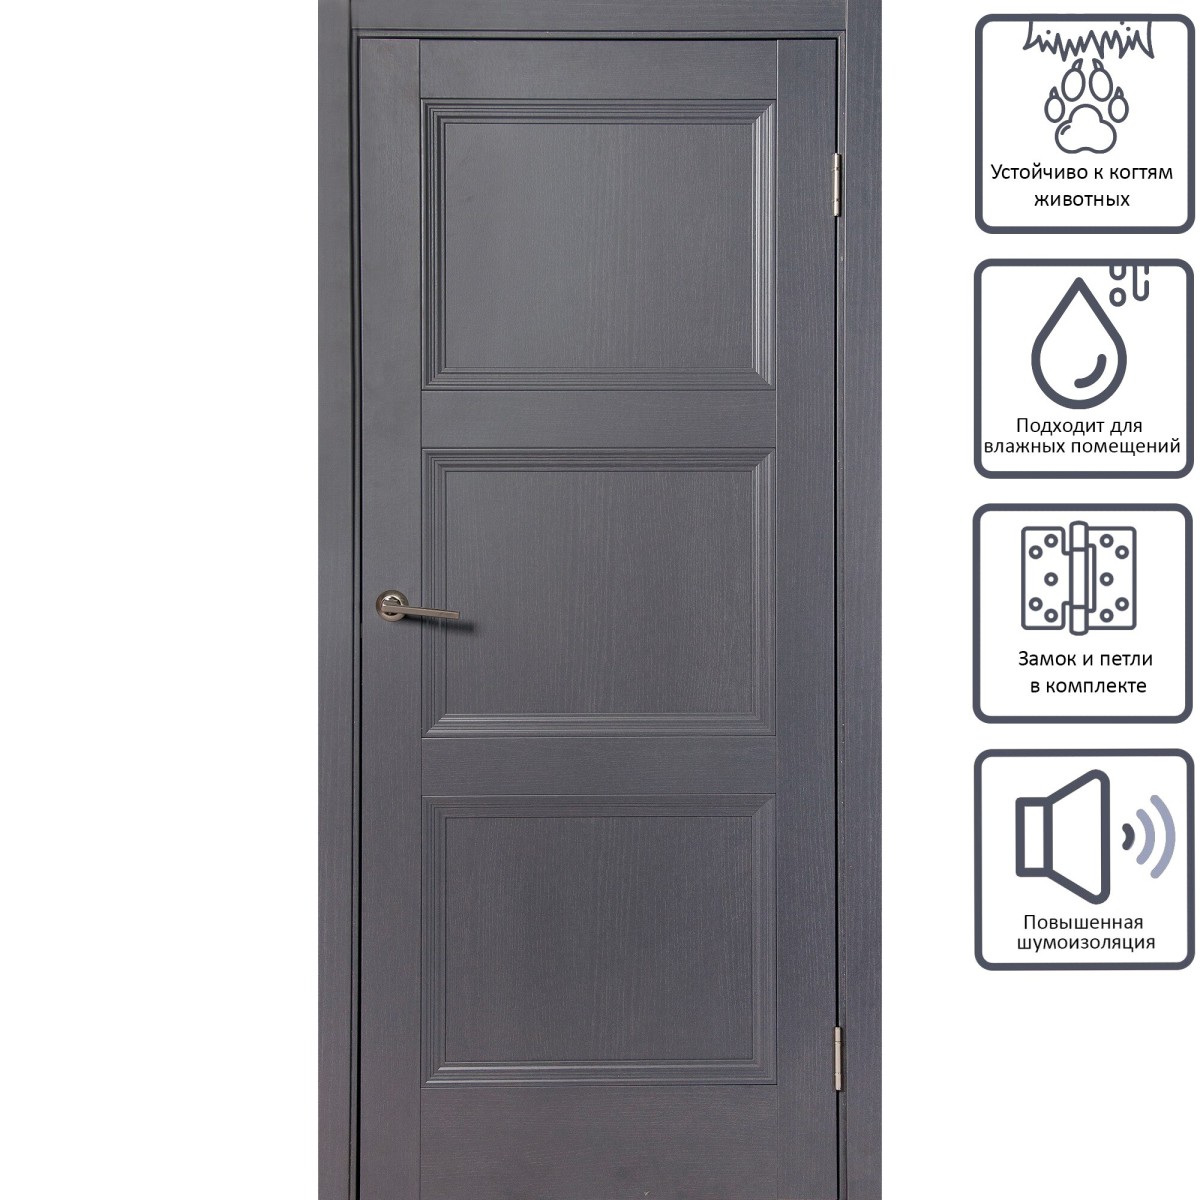 Дверь межкомнатная глухая с замком и петлями в комплекте Трилло 70x200 см , Hardflex, цвет грей